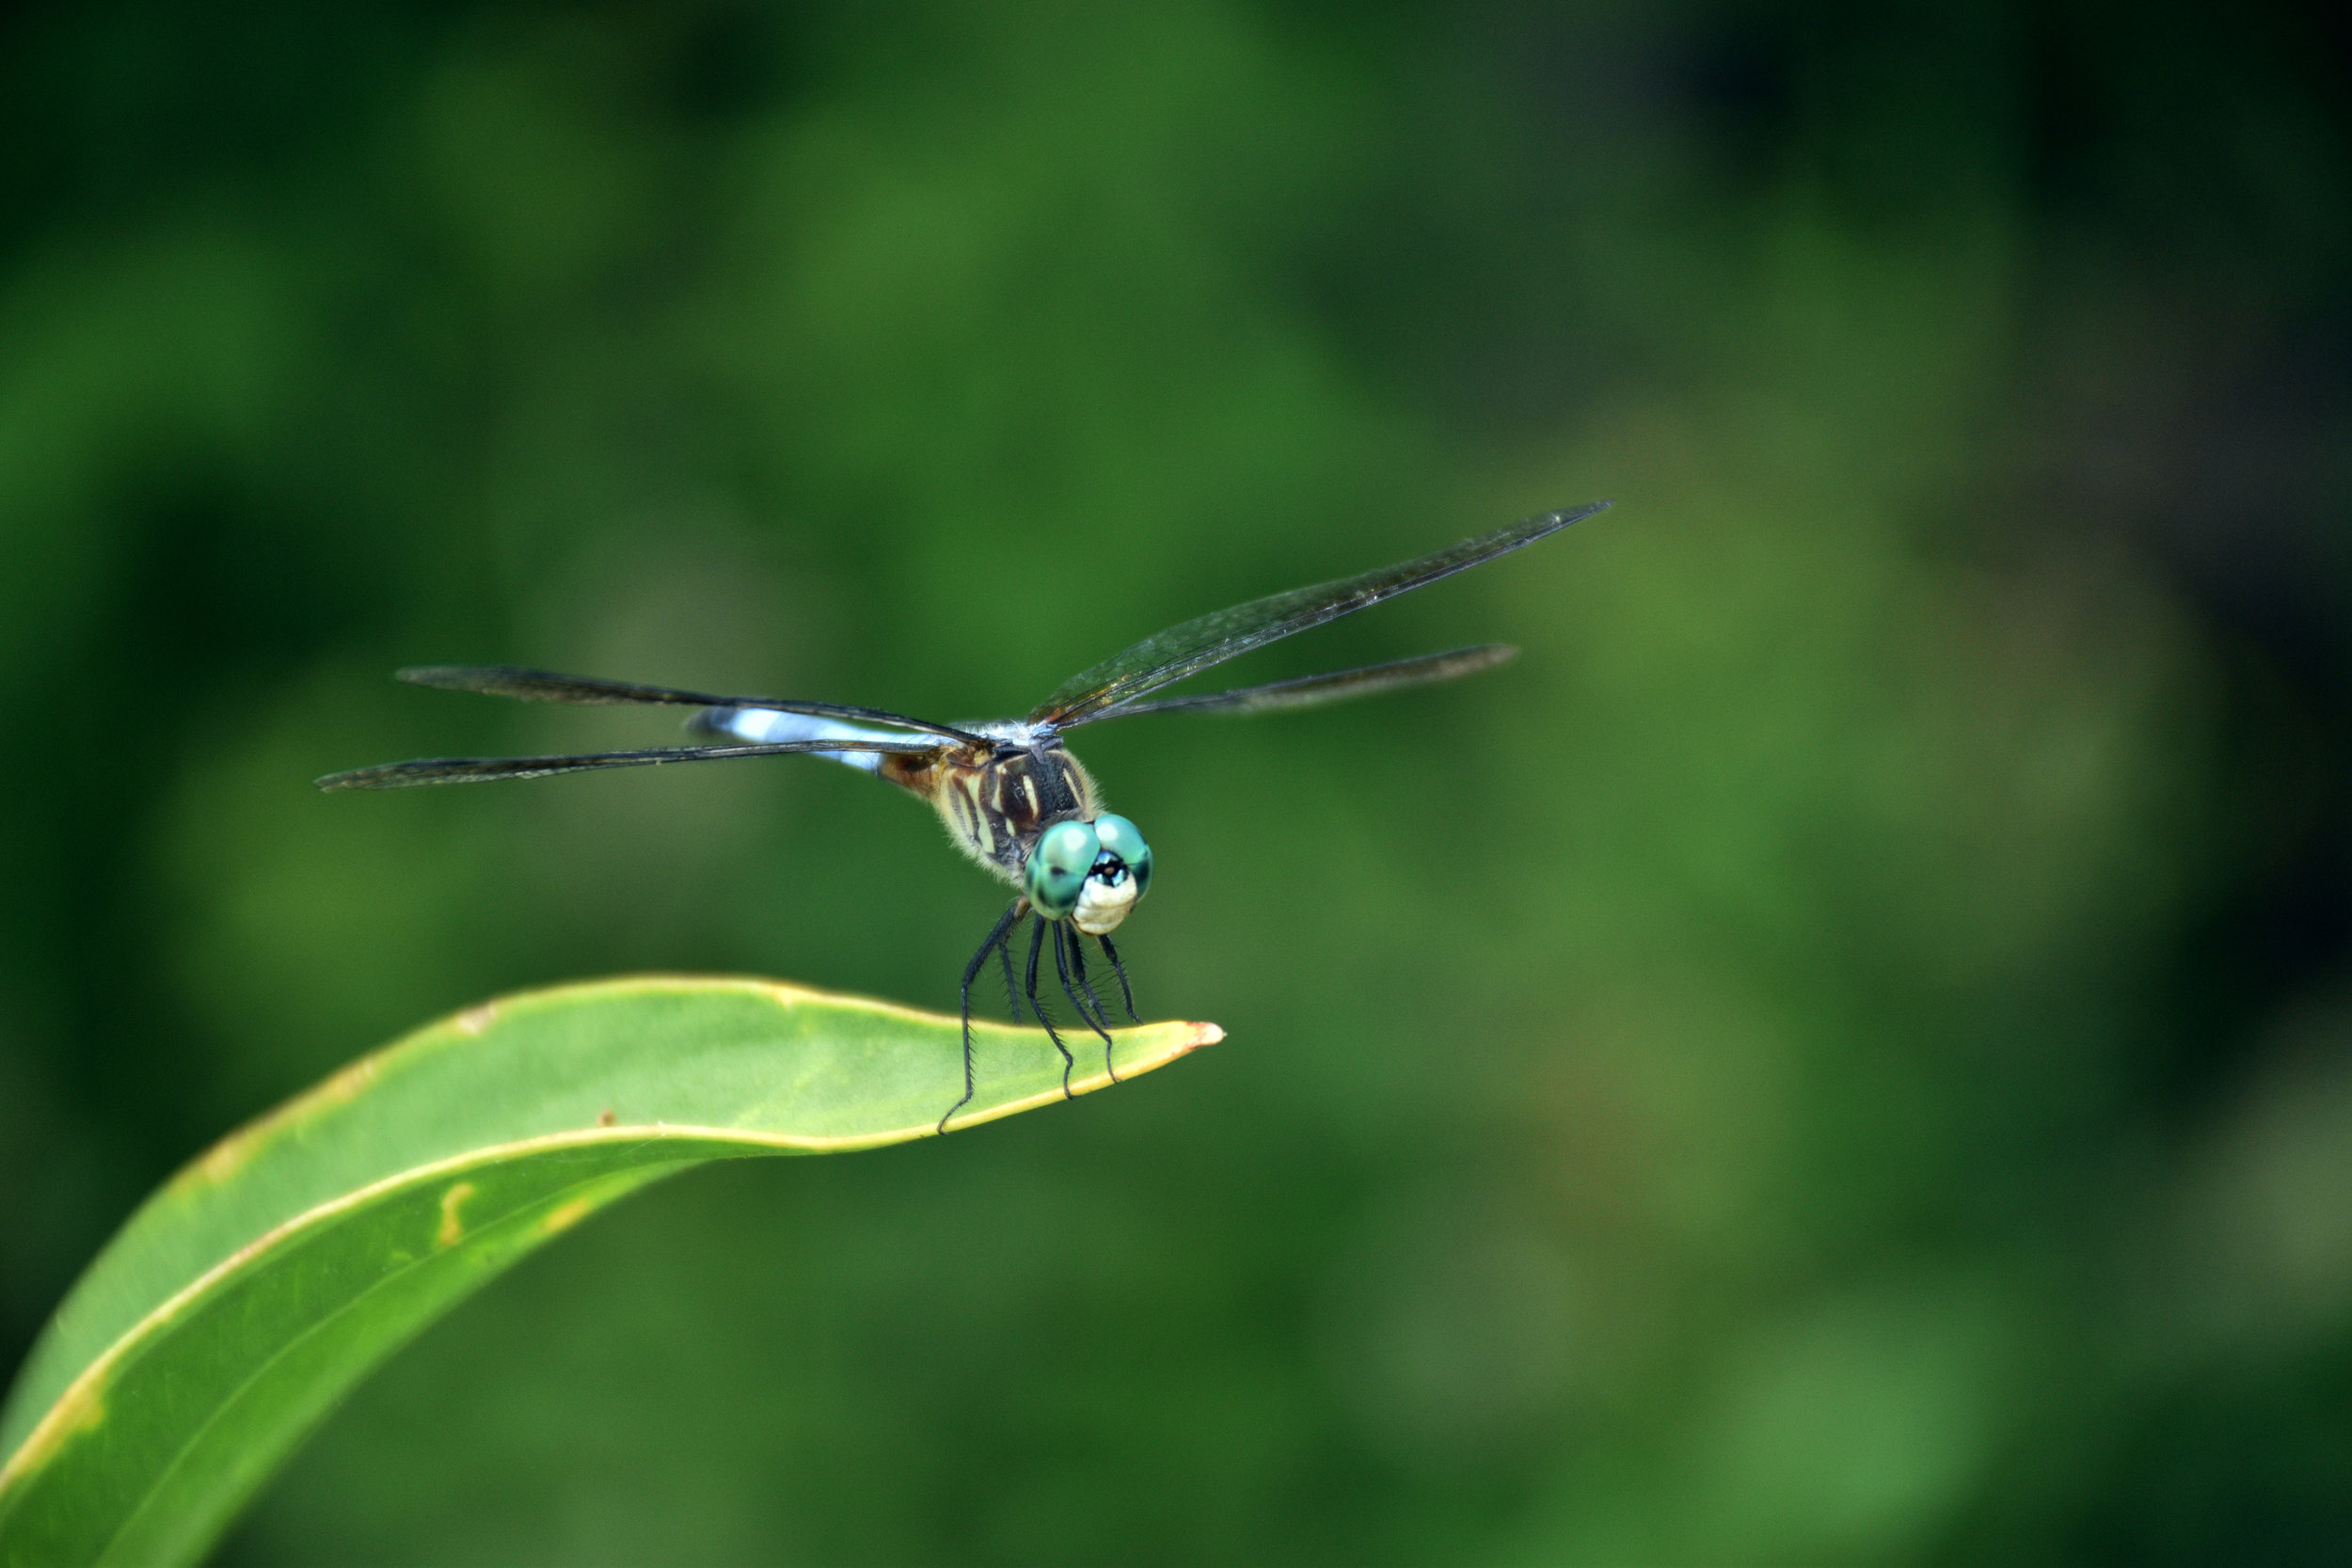 A dragonfly perches on a leaf